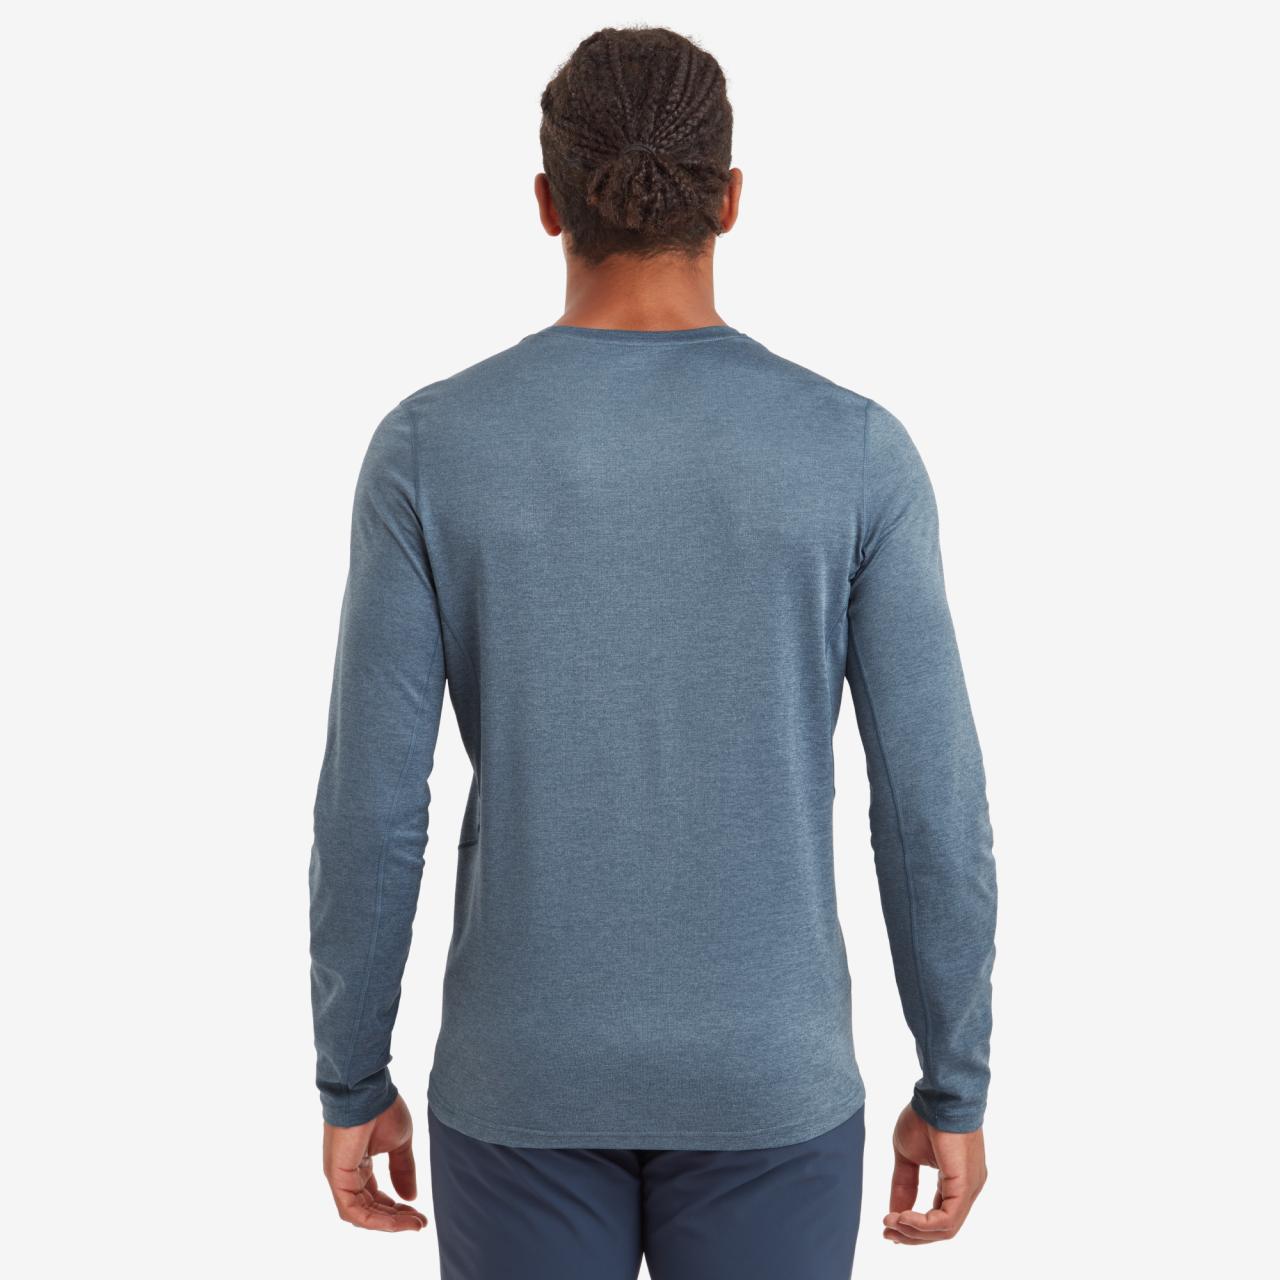 DART LONG SLEEVE T-SHIRT-STONE BLUE-XXXL pánské triko dlouhý ruk. šedomodré